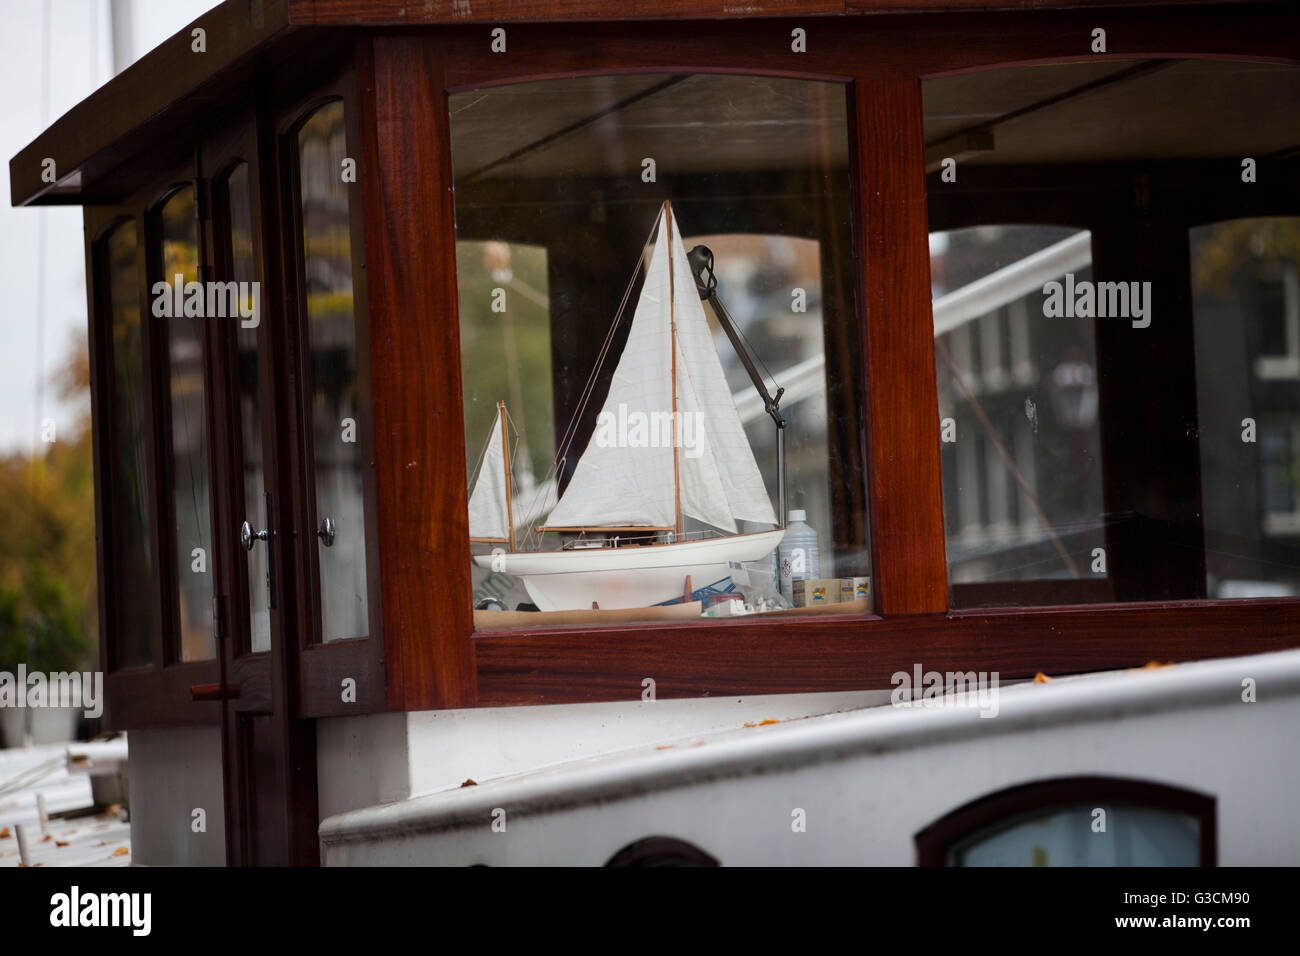 Petit voilier dans la fenêtre d'un vrai bateau, situé dans achannel d'Amsterdam Banque D'Images